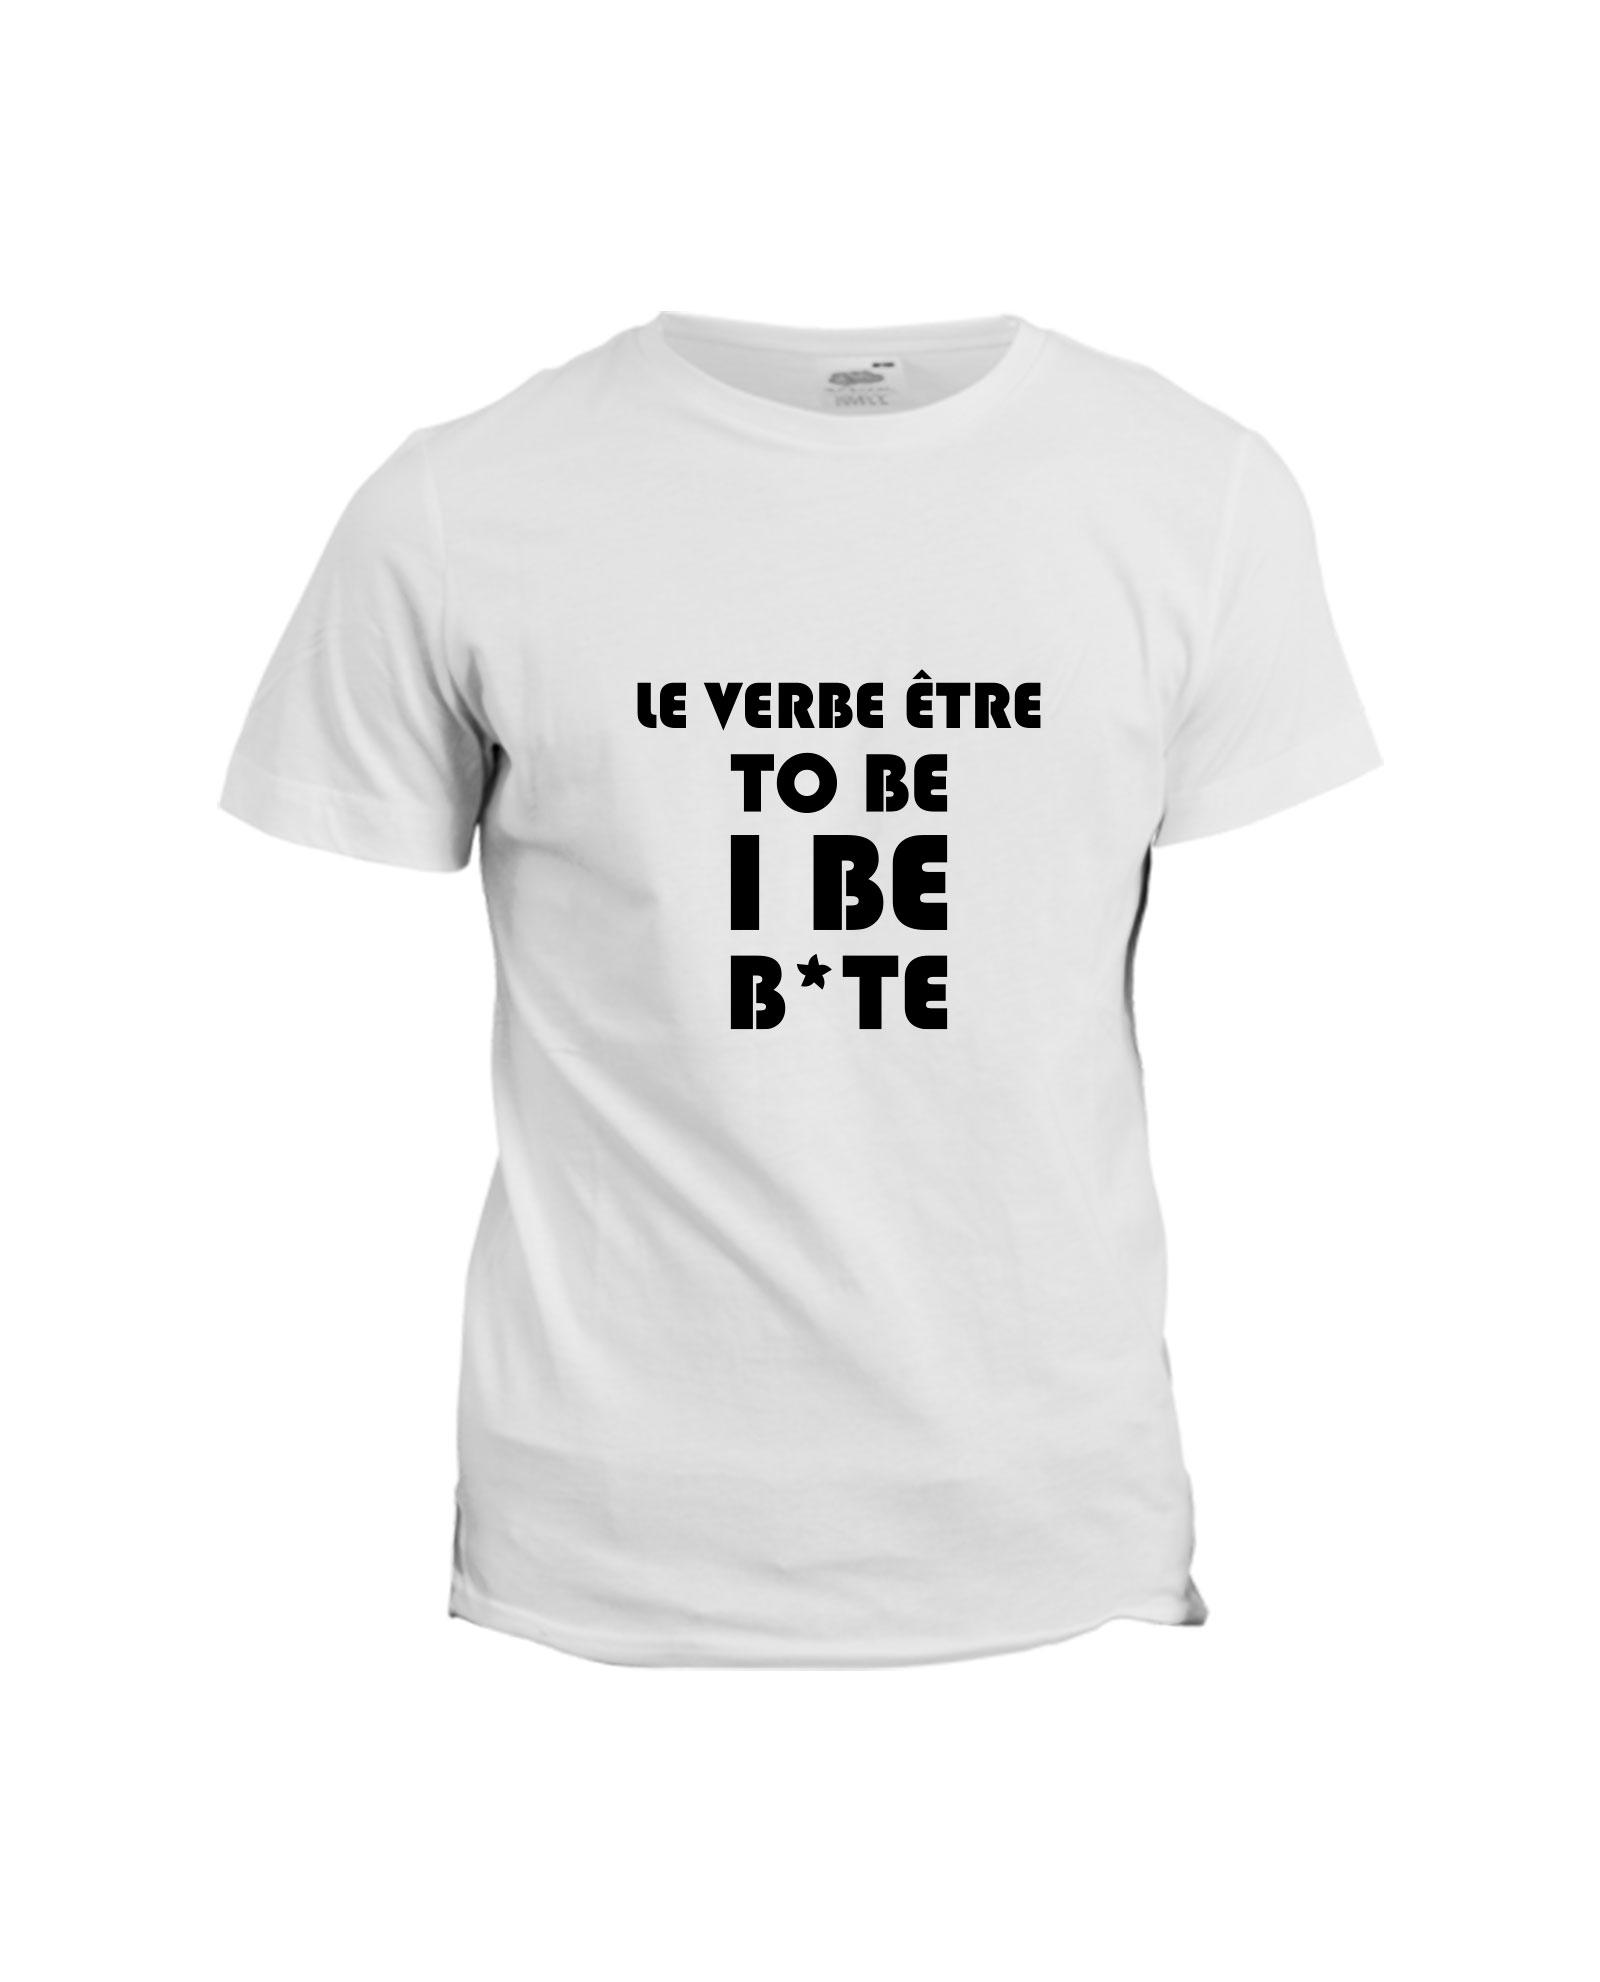 la-ligne-shop-t-shirt-le-verbe-etre-to-be-i-be-bite